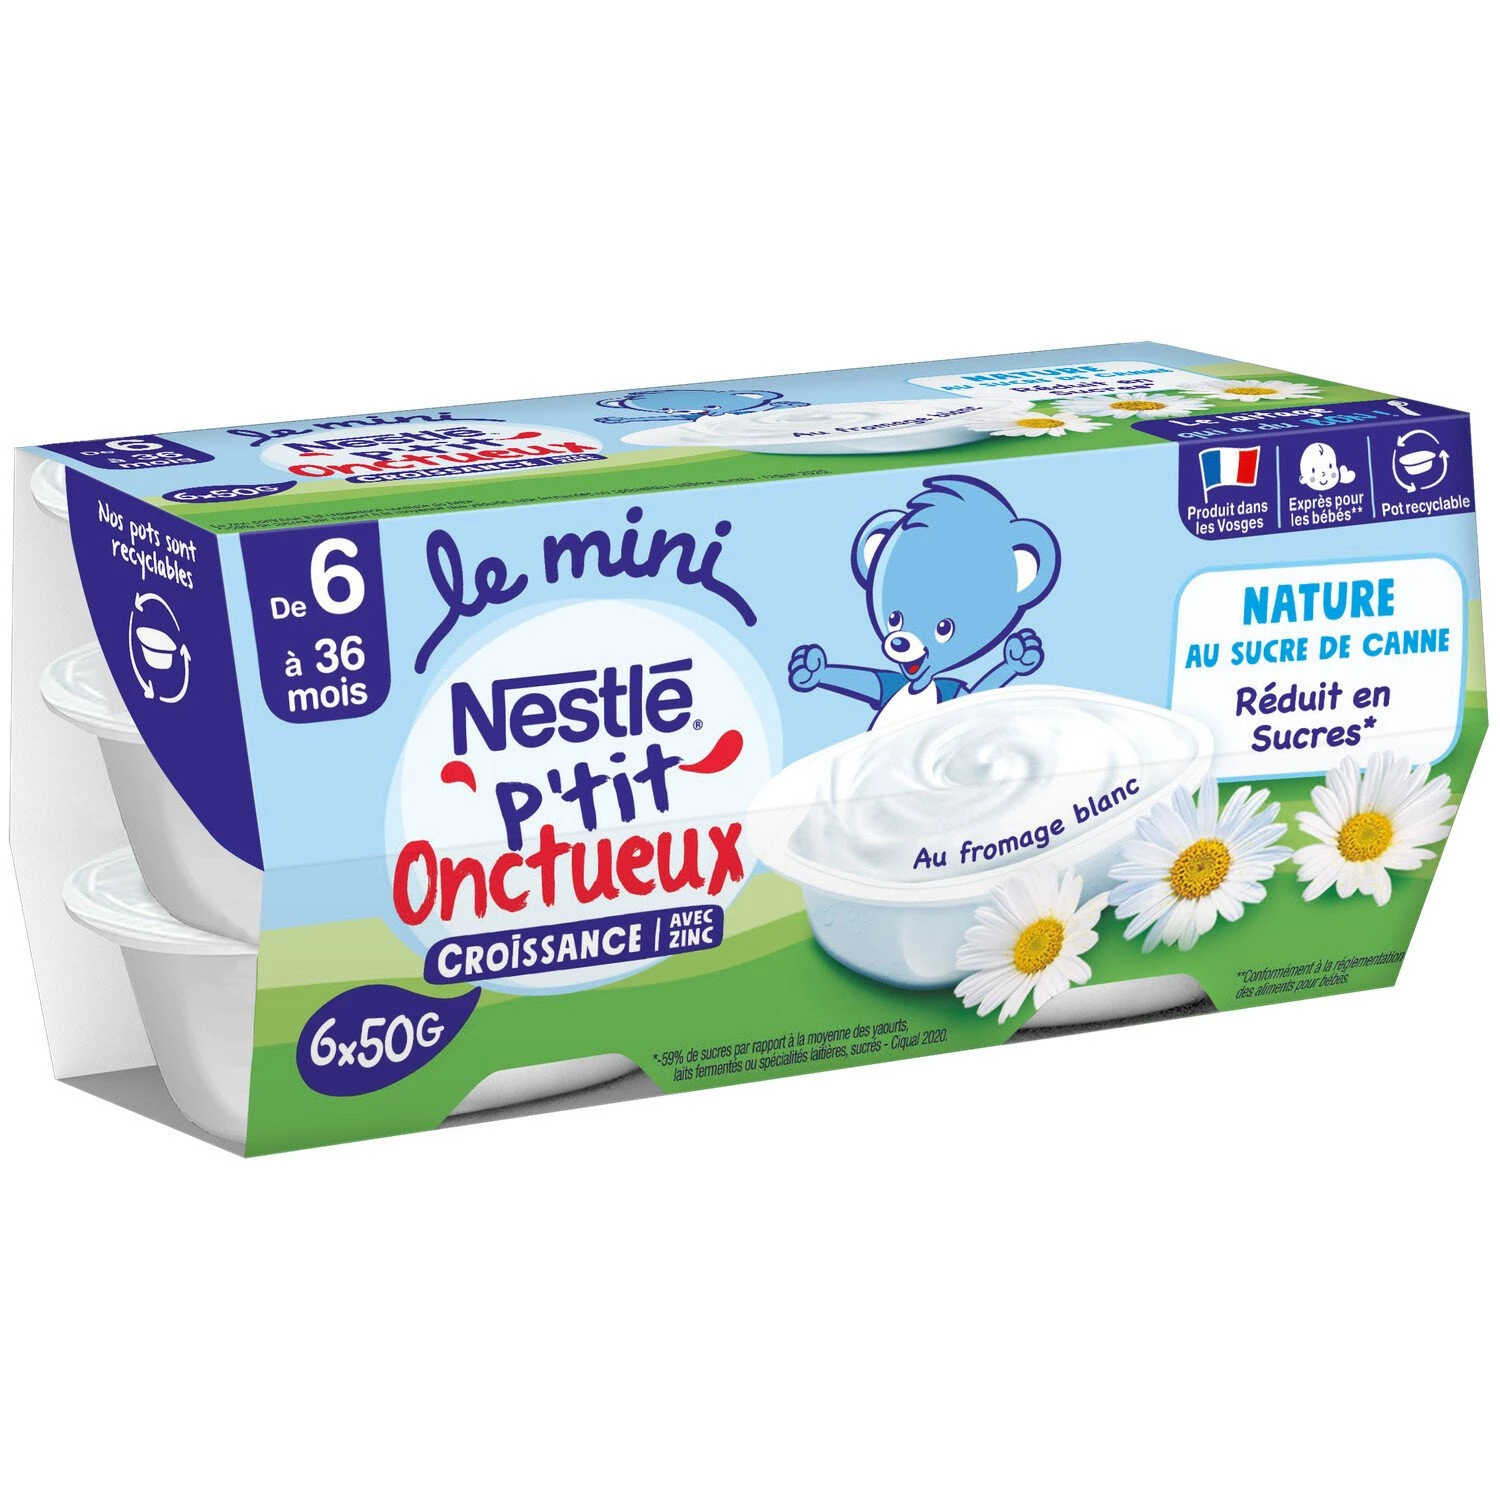 小奶油天然婴儿甜点加蔗糖 6x50g - NESTLE